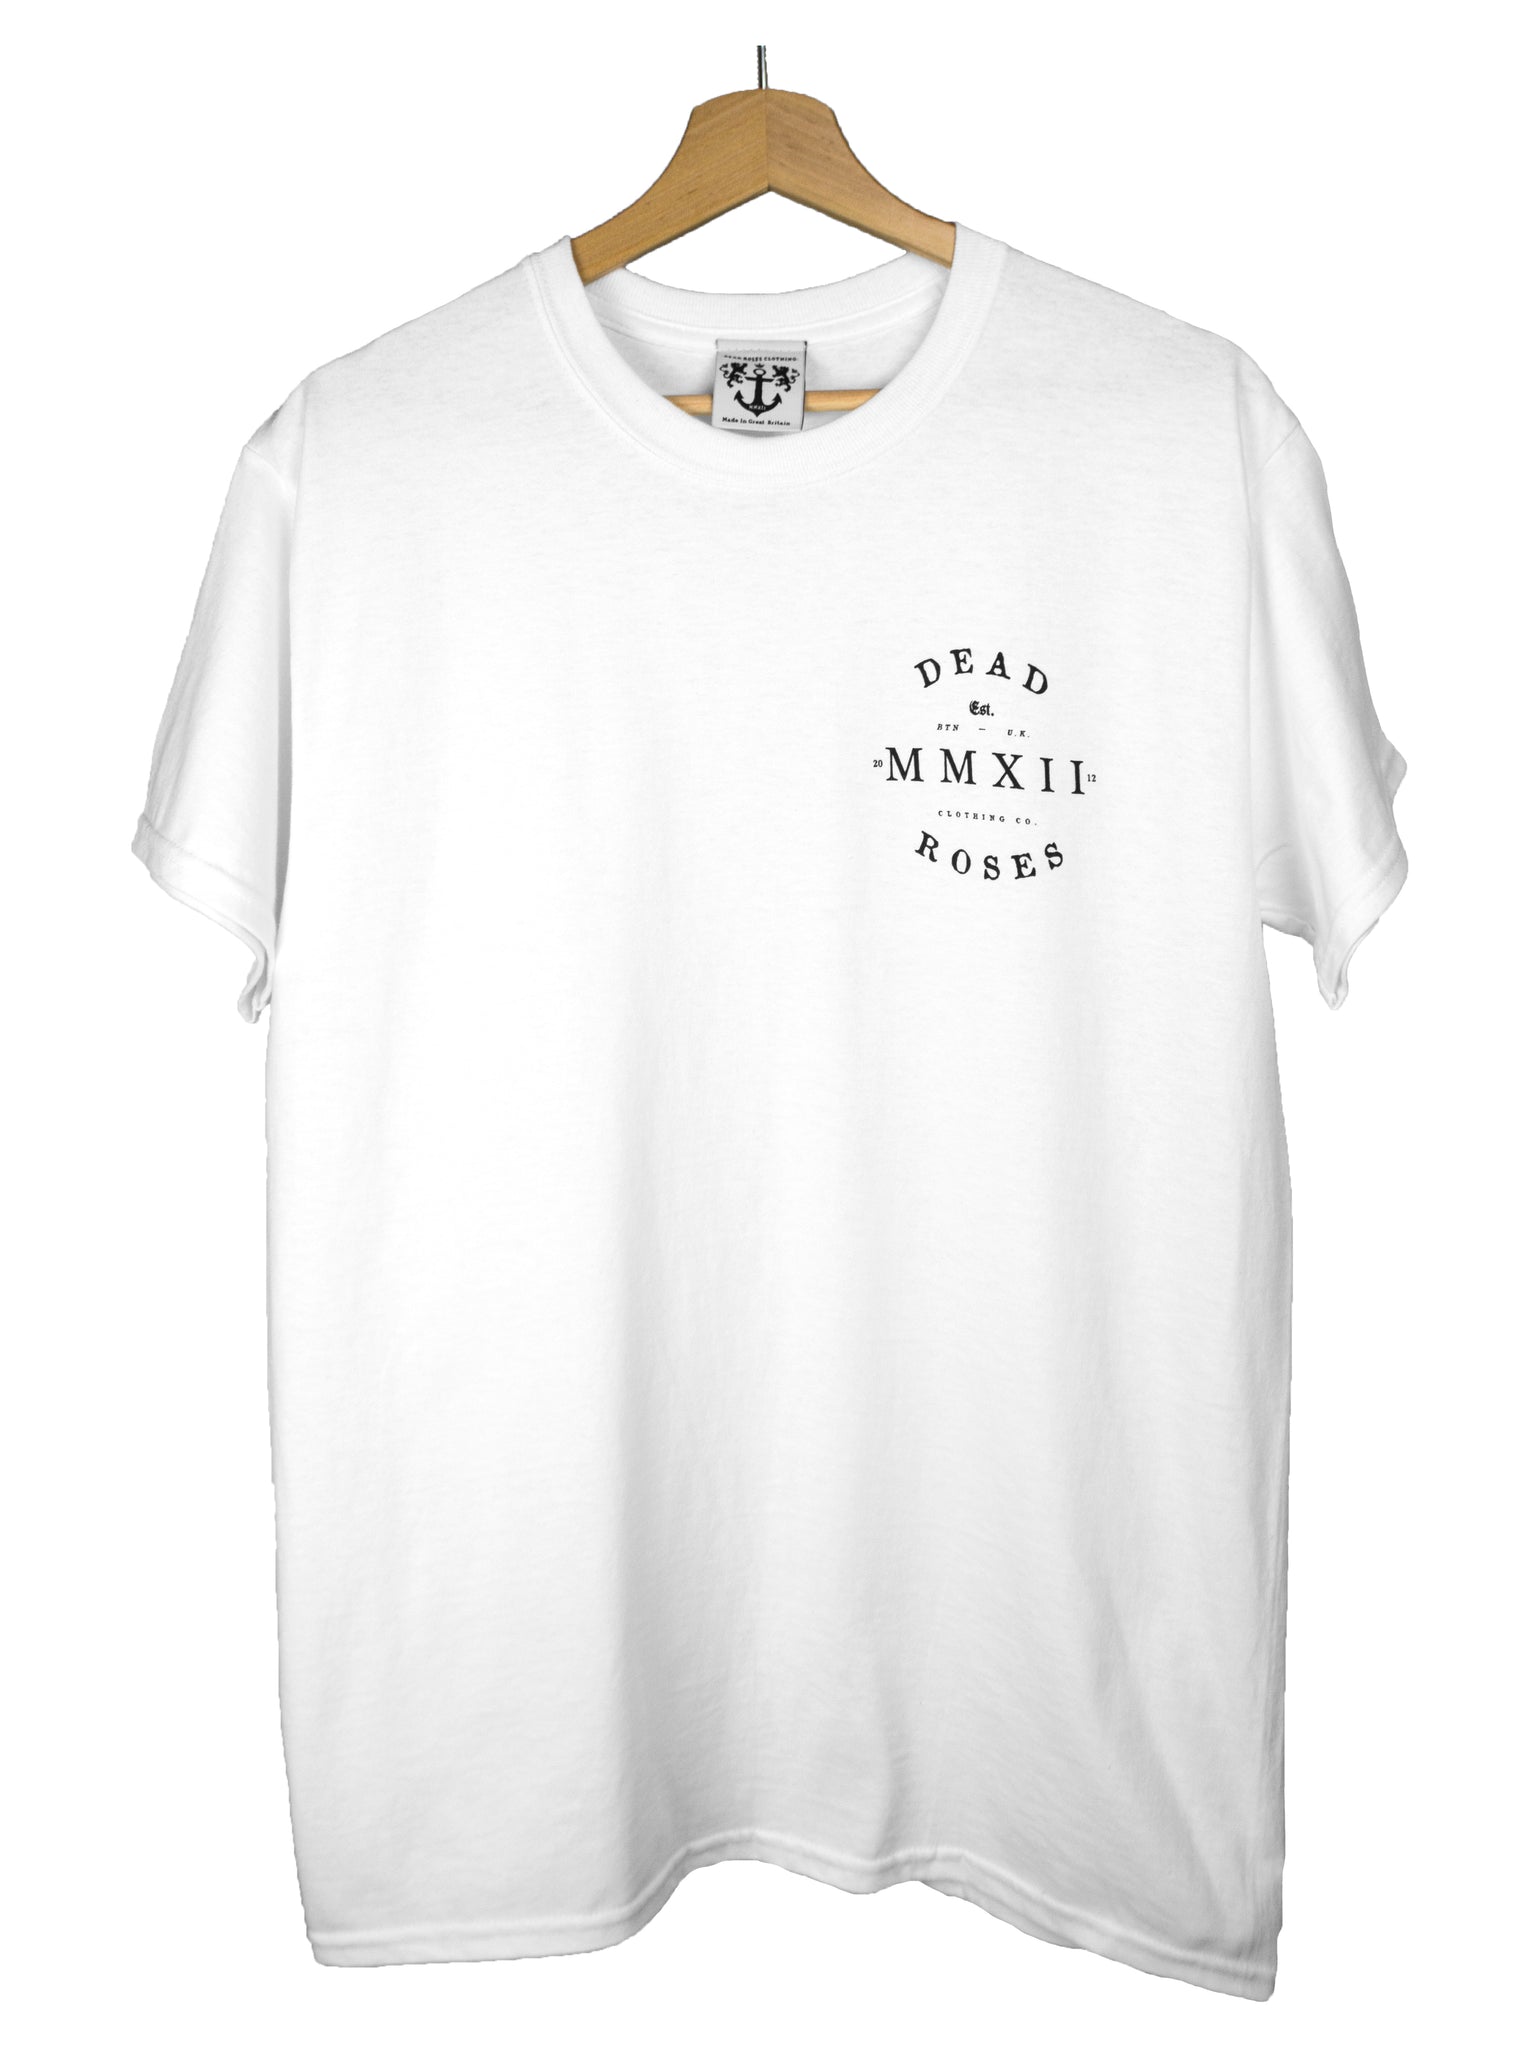 MMXII T-Shirt